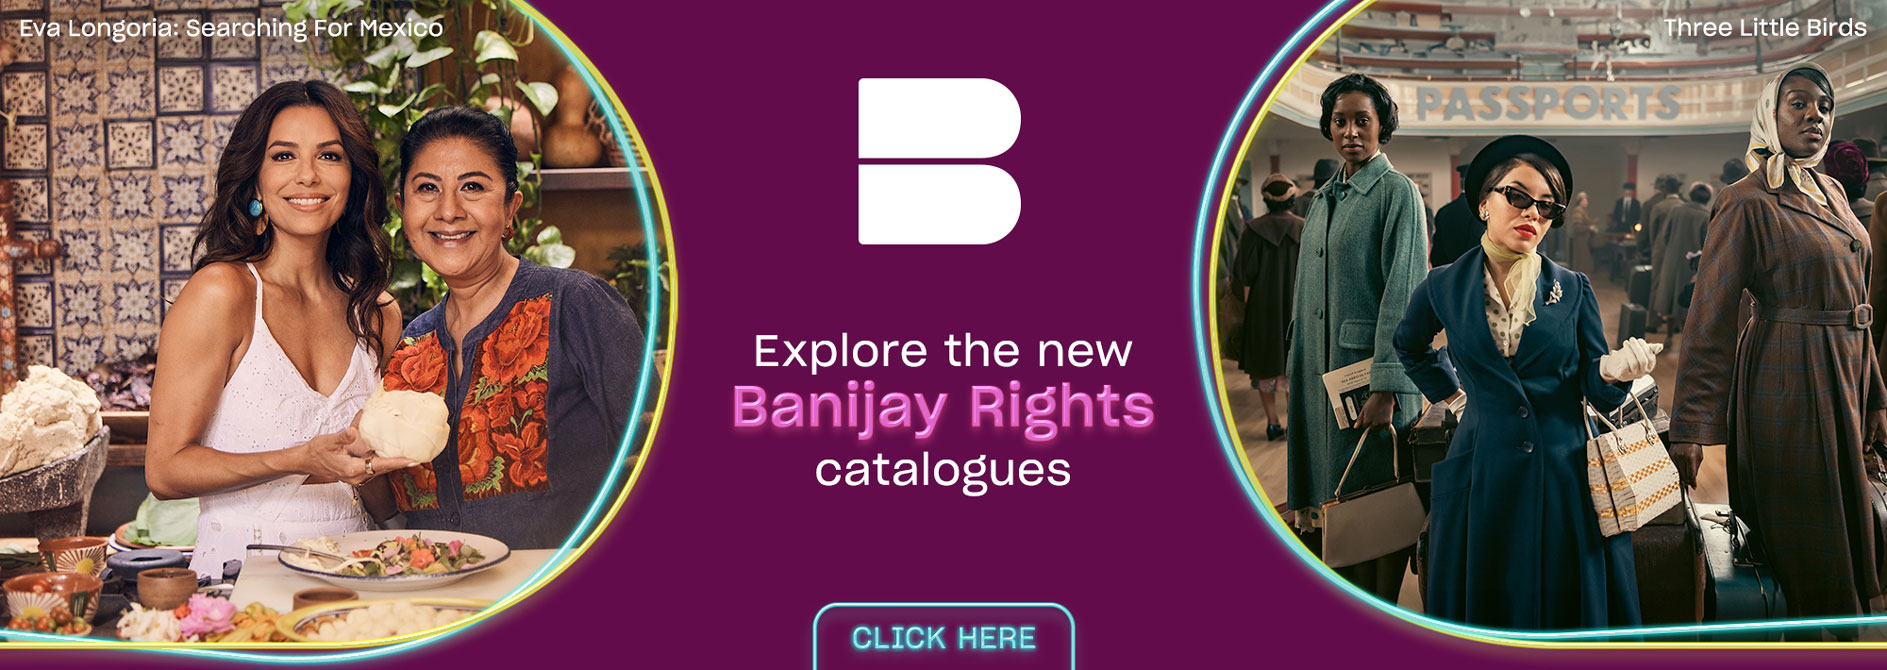 Banijay Rights